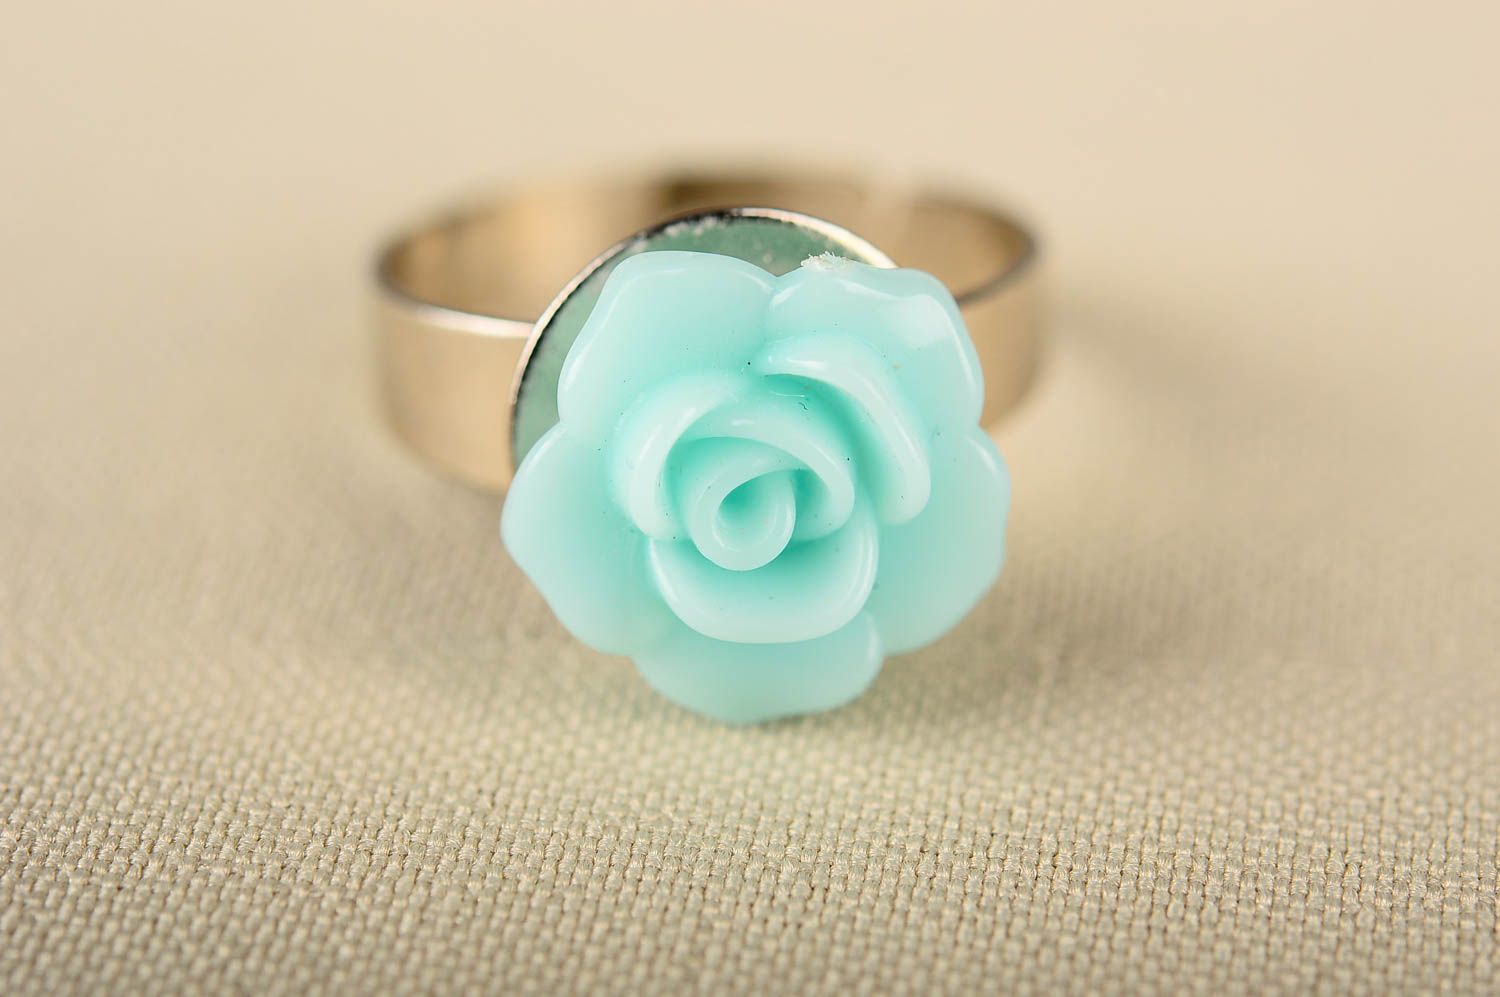 Кольцо ручной работы кольцо из пластика в виде цветка модное кольцо для девушки фото 3